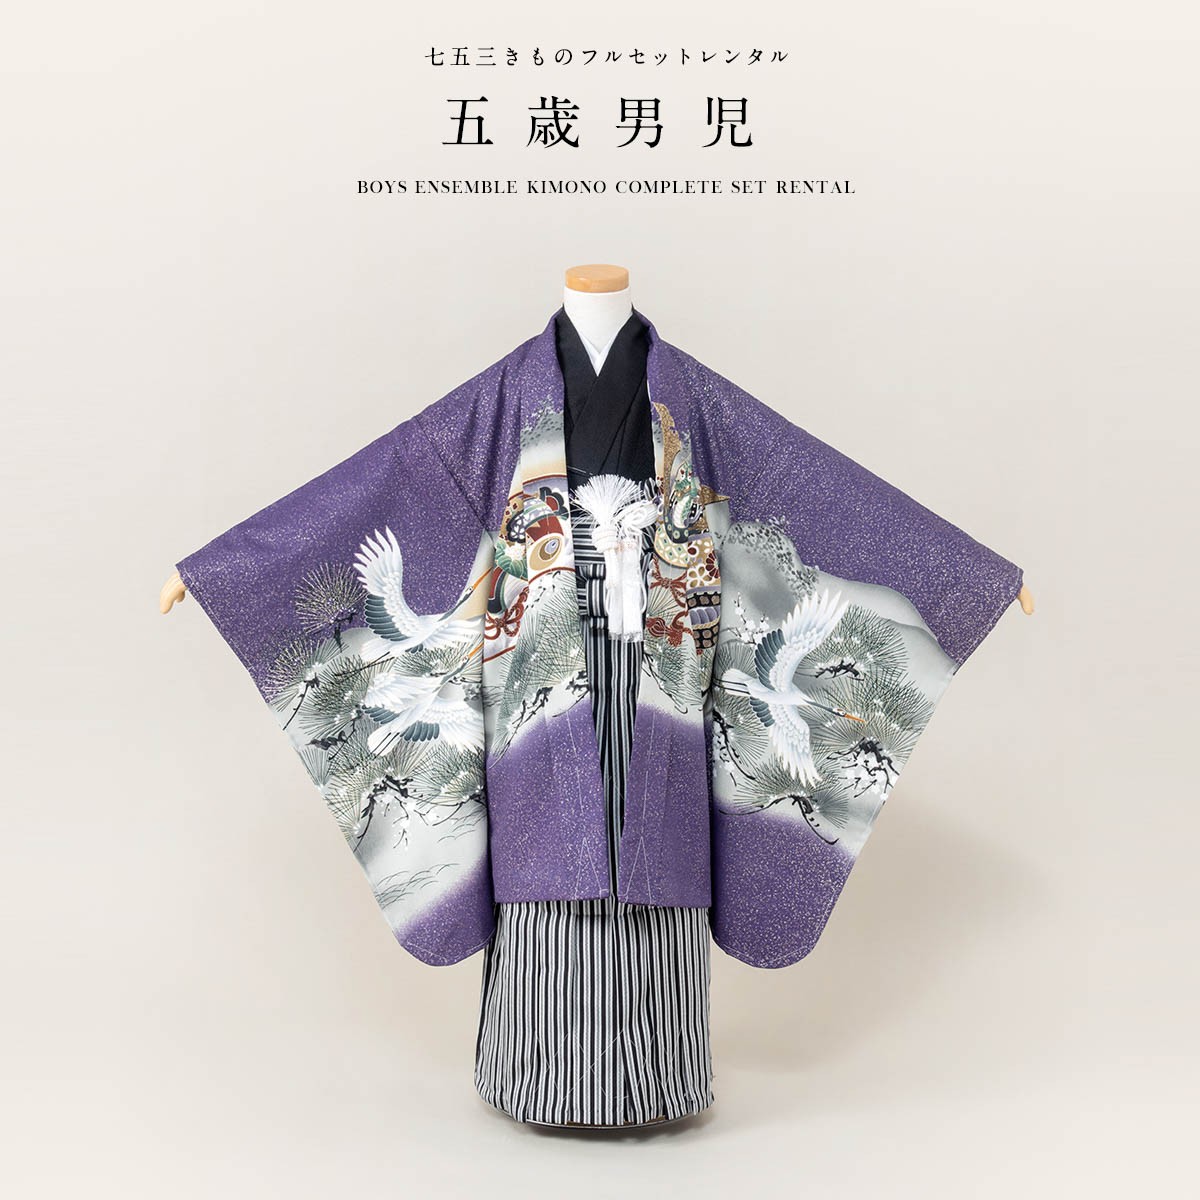 七五三 着物 レンタル 5歳 男の子 フルセット 袴セット 紫 パープル 黒 